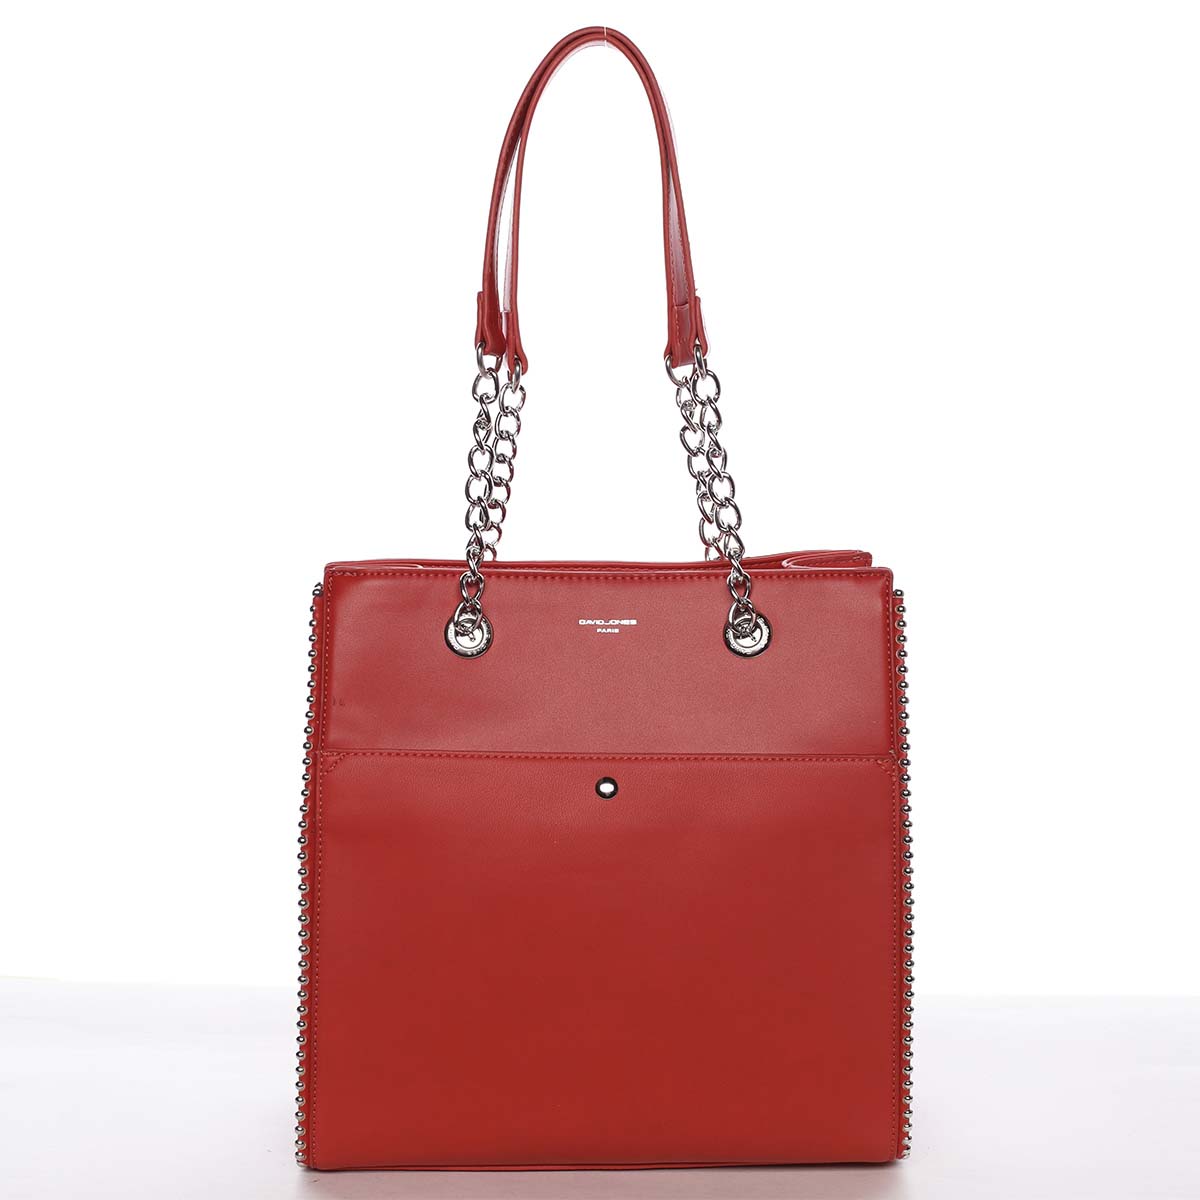 Luxusní a originální dámská červená kabelka přes rameno - David Jones Mishel